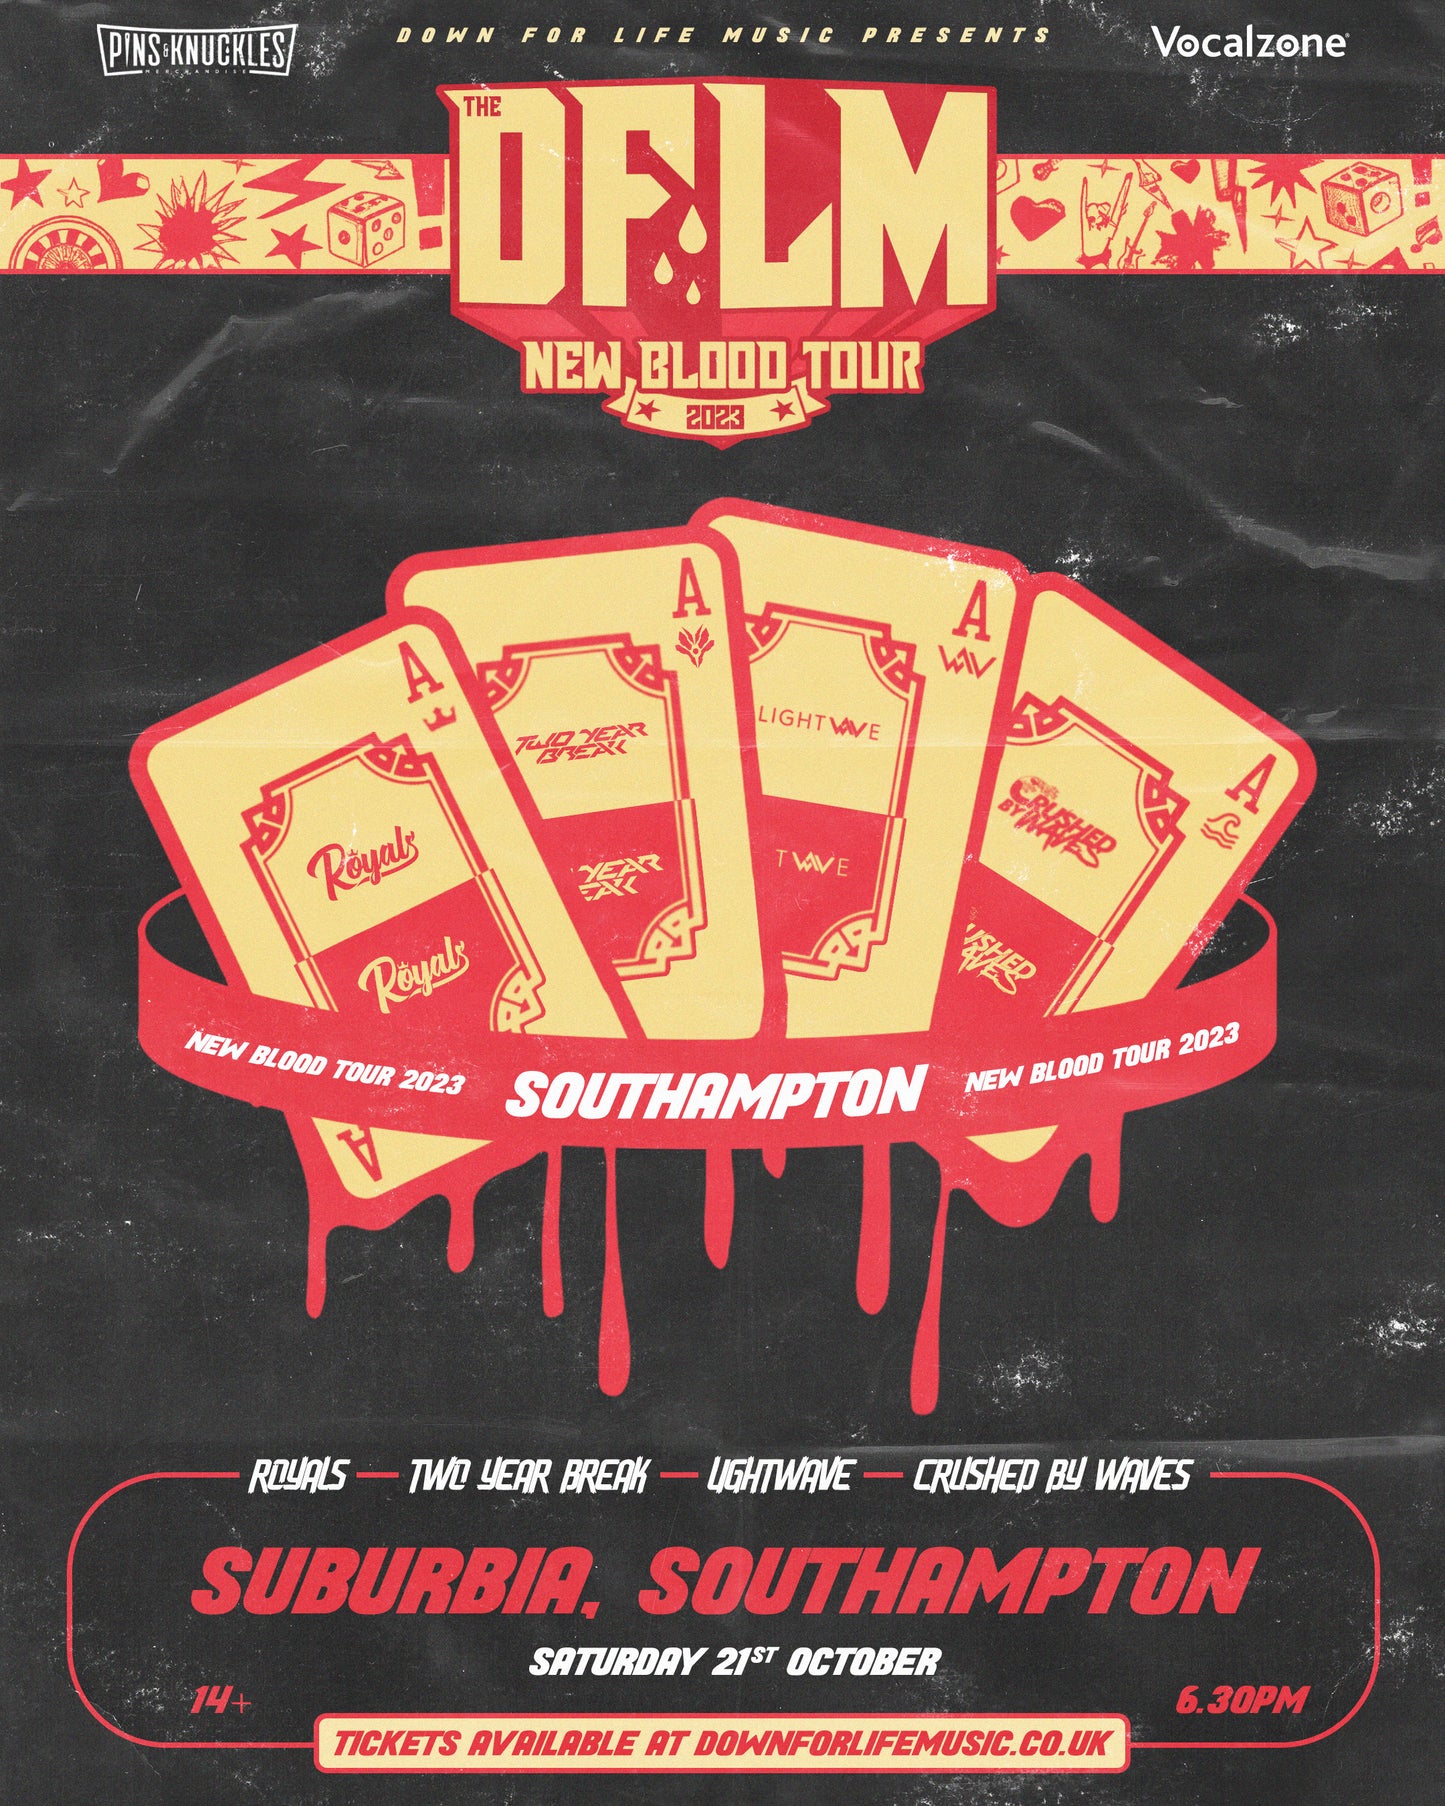 DFLM Presents: The New Blood Tour 2023 @ Suburbia, Southampton